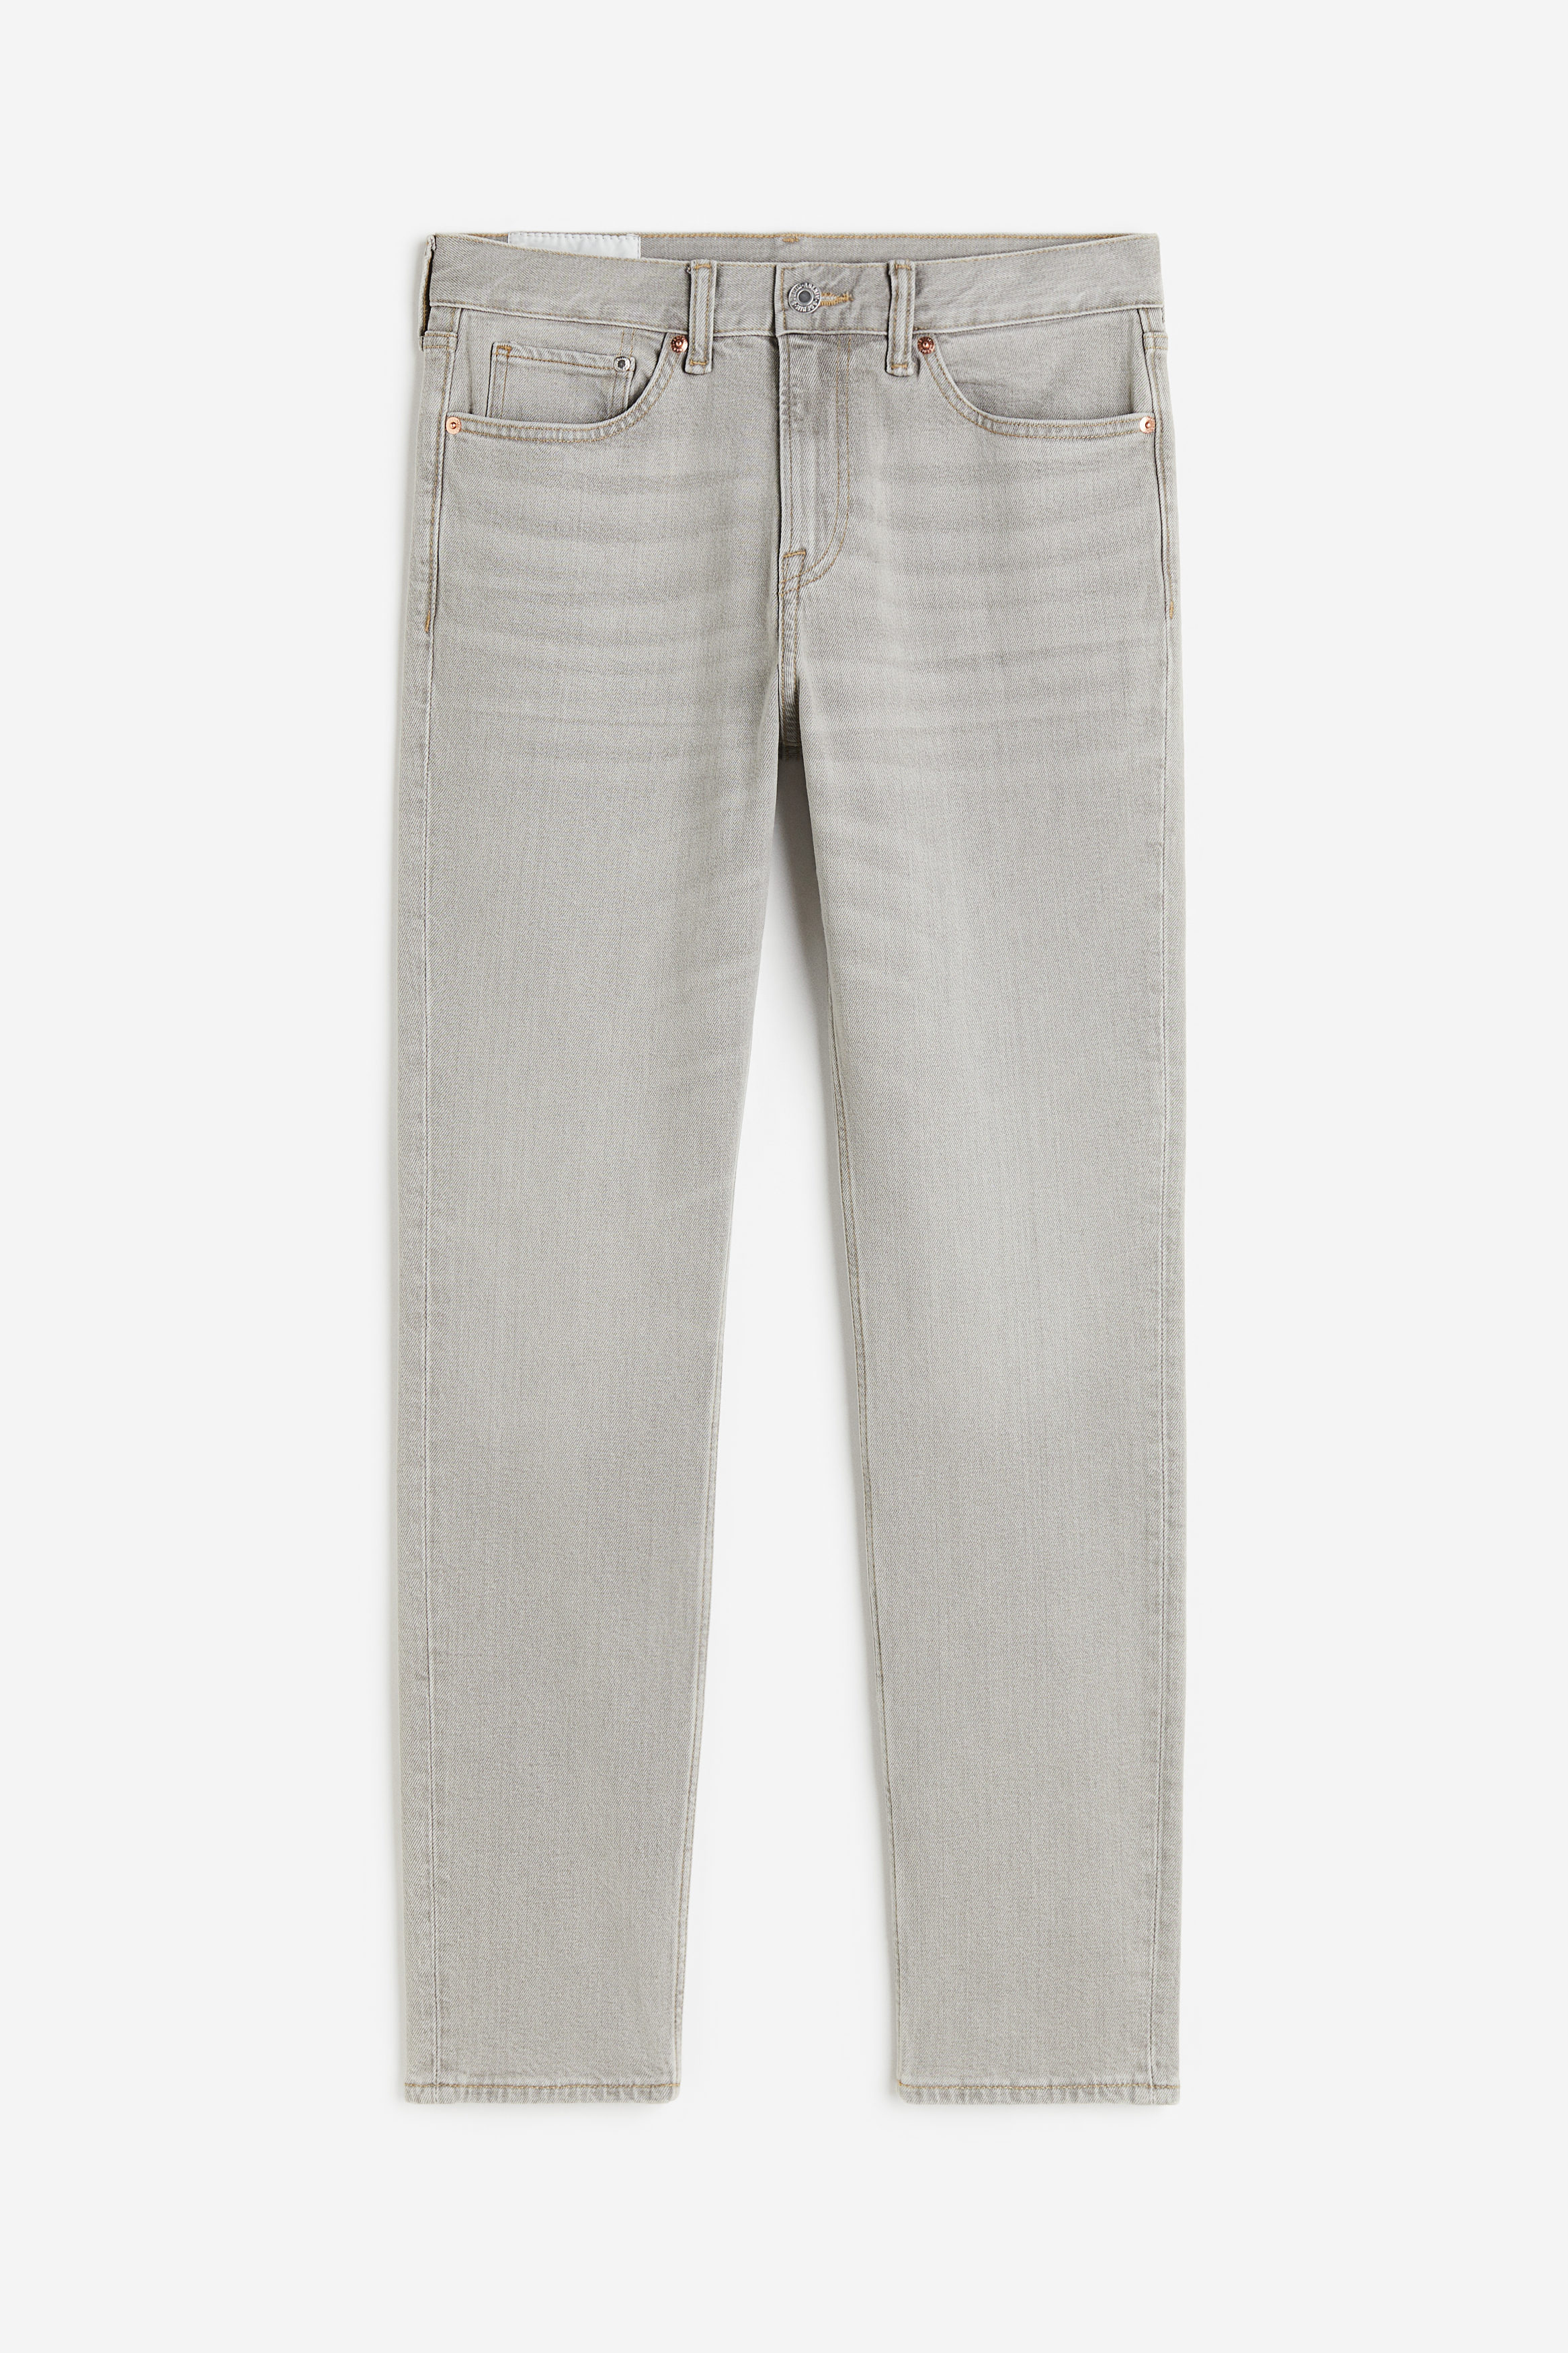 Billede af H&M Slim Jeans Lysegrå, Skinny jeans. Farve: Light grey I størrelse 32/34